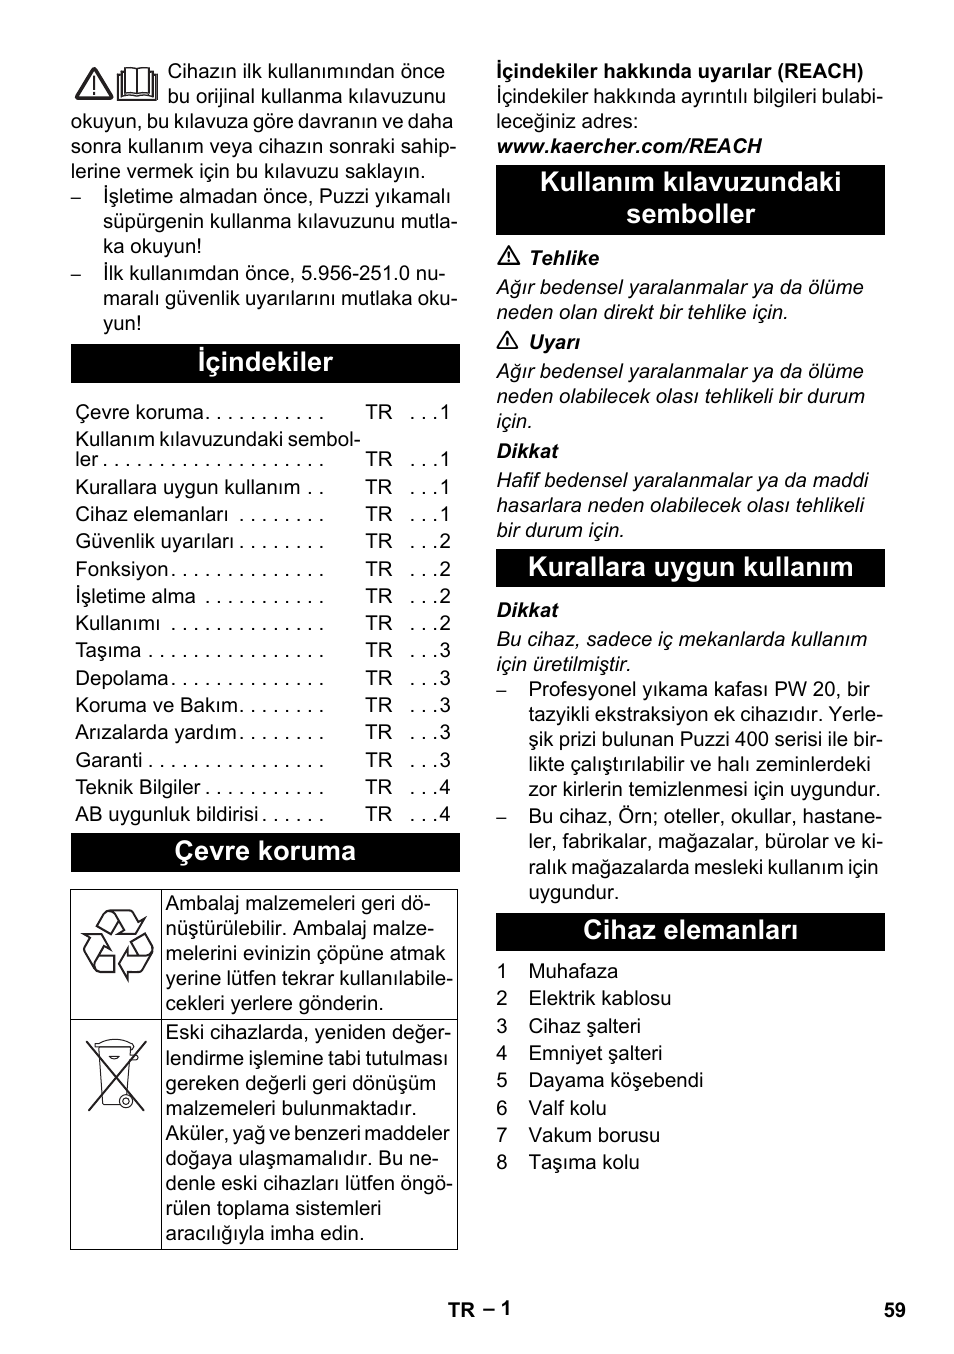 Türkçe, Içindekiler, Çevre koruma | Karcher PW 20 User Manual | Page 59 /  132 | Original mode